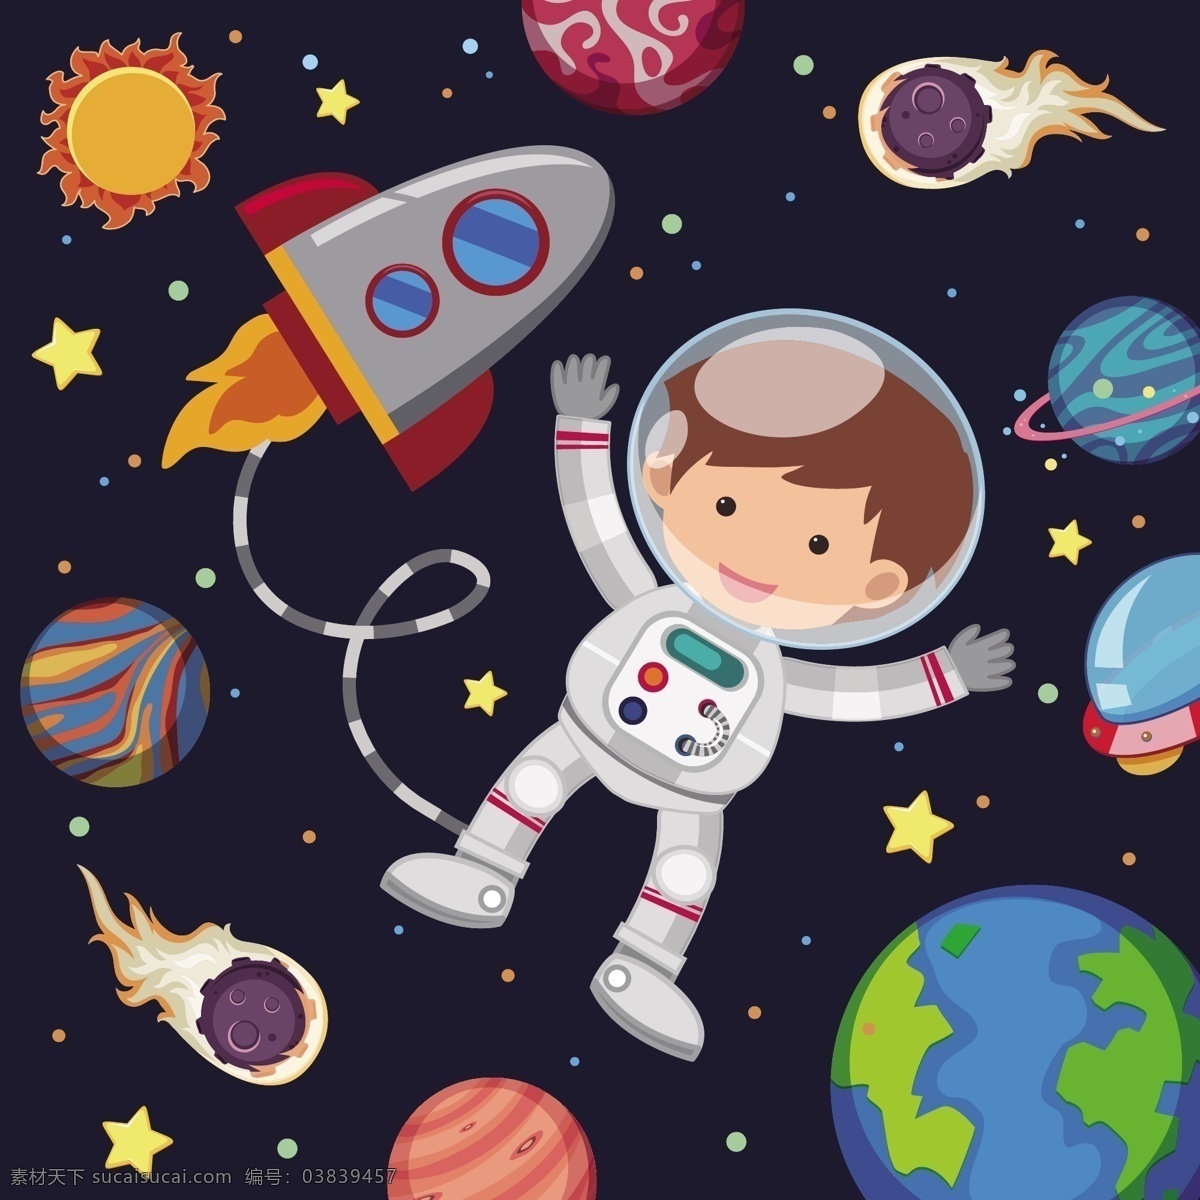 宇宙 外 太空 创意 插画 卡通 可爱 儿童 人物 宇航员 墙绘 海报 生日卡片 背景矢量 星球 球体 外太空 宇宙飞船 星星 夜空 动漫动画